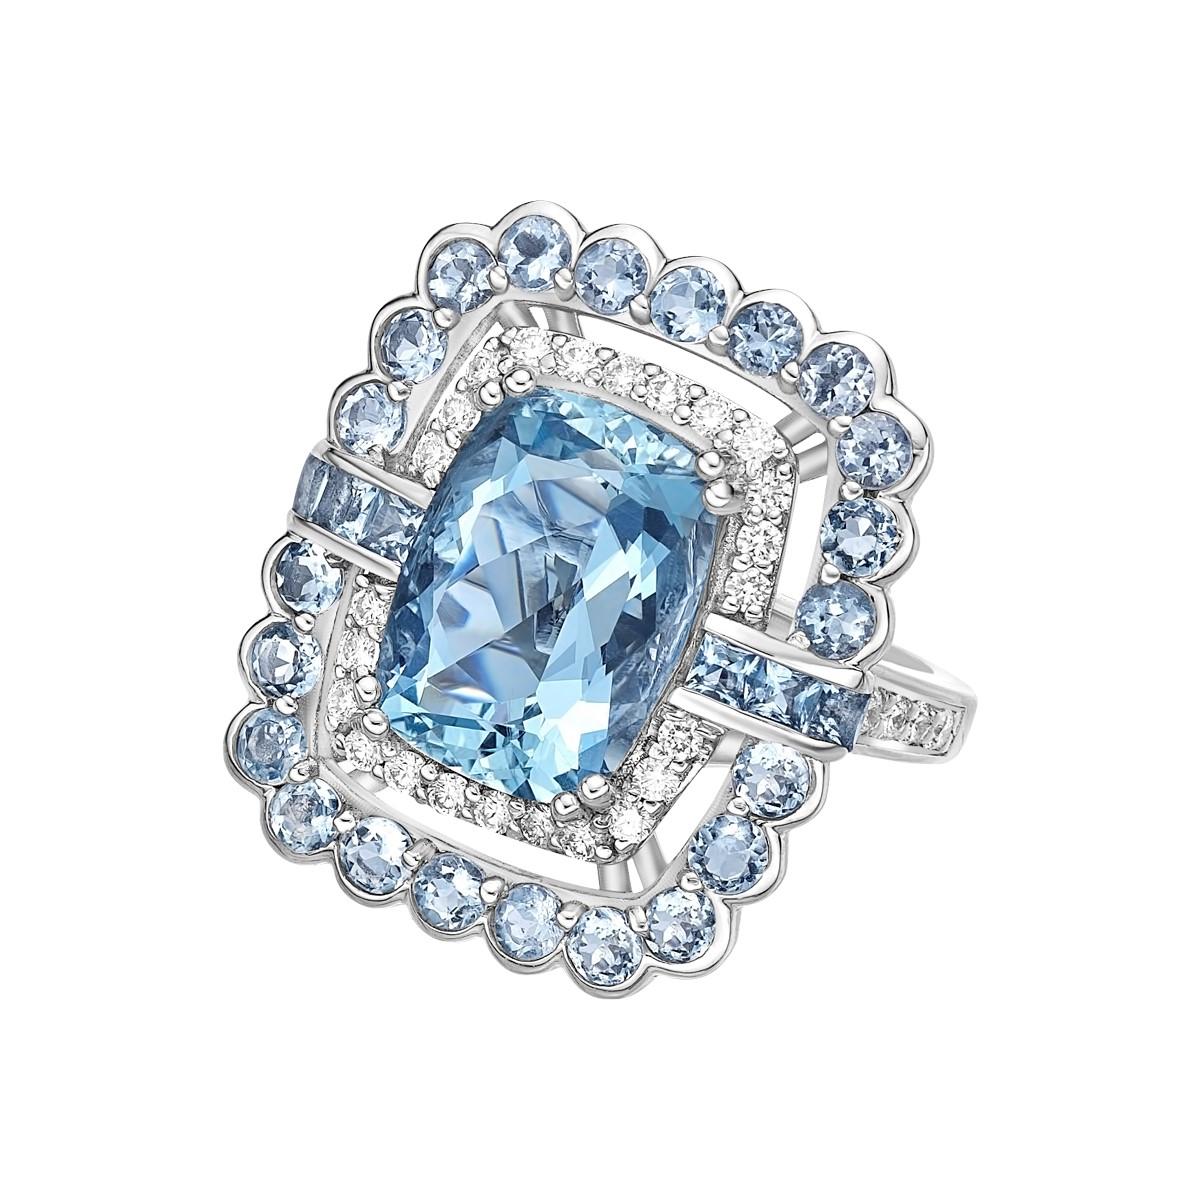 Diese Kollektion bietet eine Reihe von Aquamarinen mit einem eisblauen Farbton, der so cool ist, wie er nur sein kann! Die mit Diamanten besetzten Ringe sind aus Weißgold gefertigt und wirken klassisch und elegant. 

4,81 Karat Aquamarin Ring mit